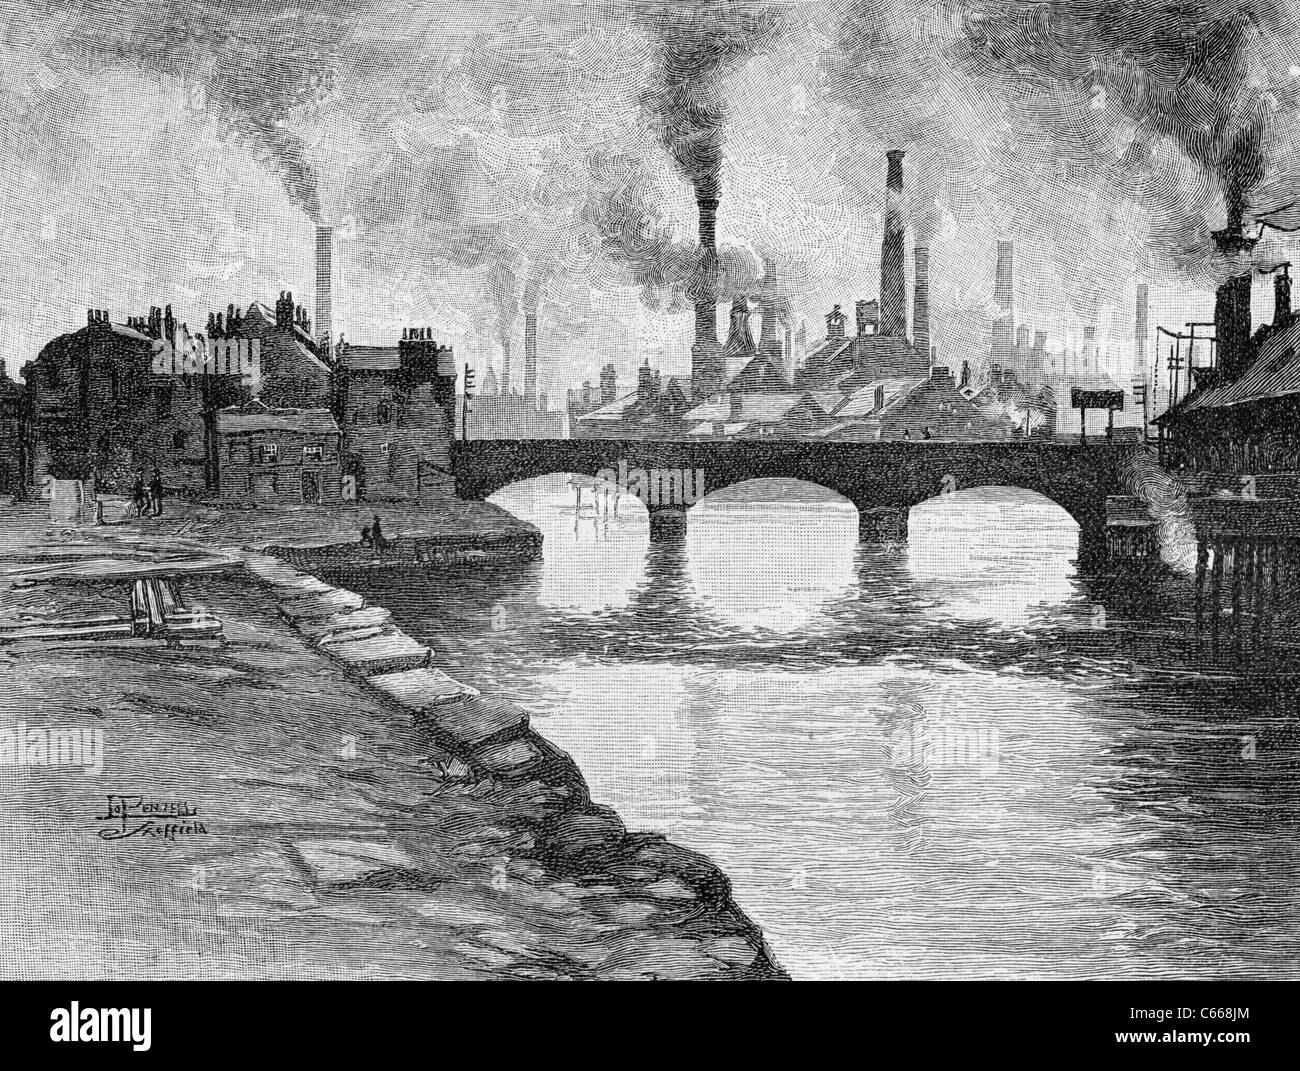 Sheffield sur la journée est assez claire. Illustration dans un magazine américain imprimé en 1884. Banque D'Images